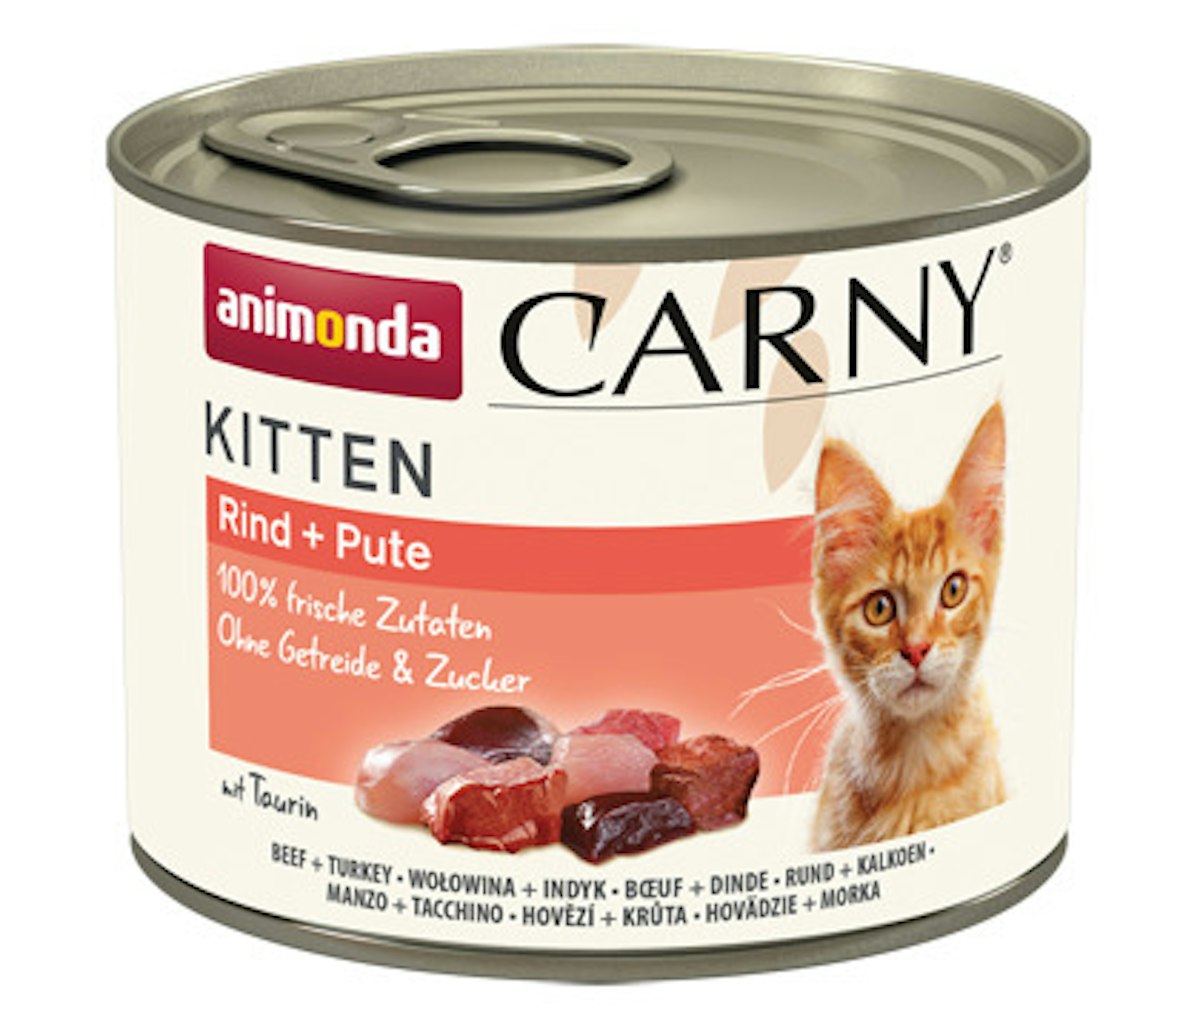 animonda Carny Kitten 200g Dose Katzennassfutter von Animonda